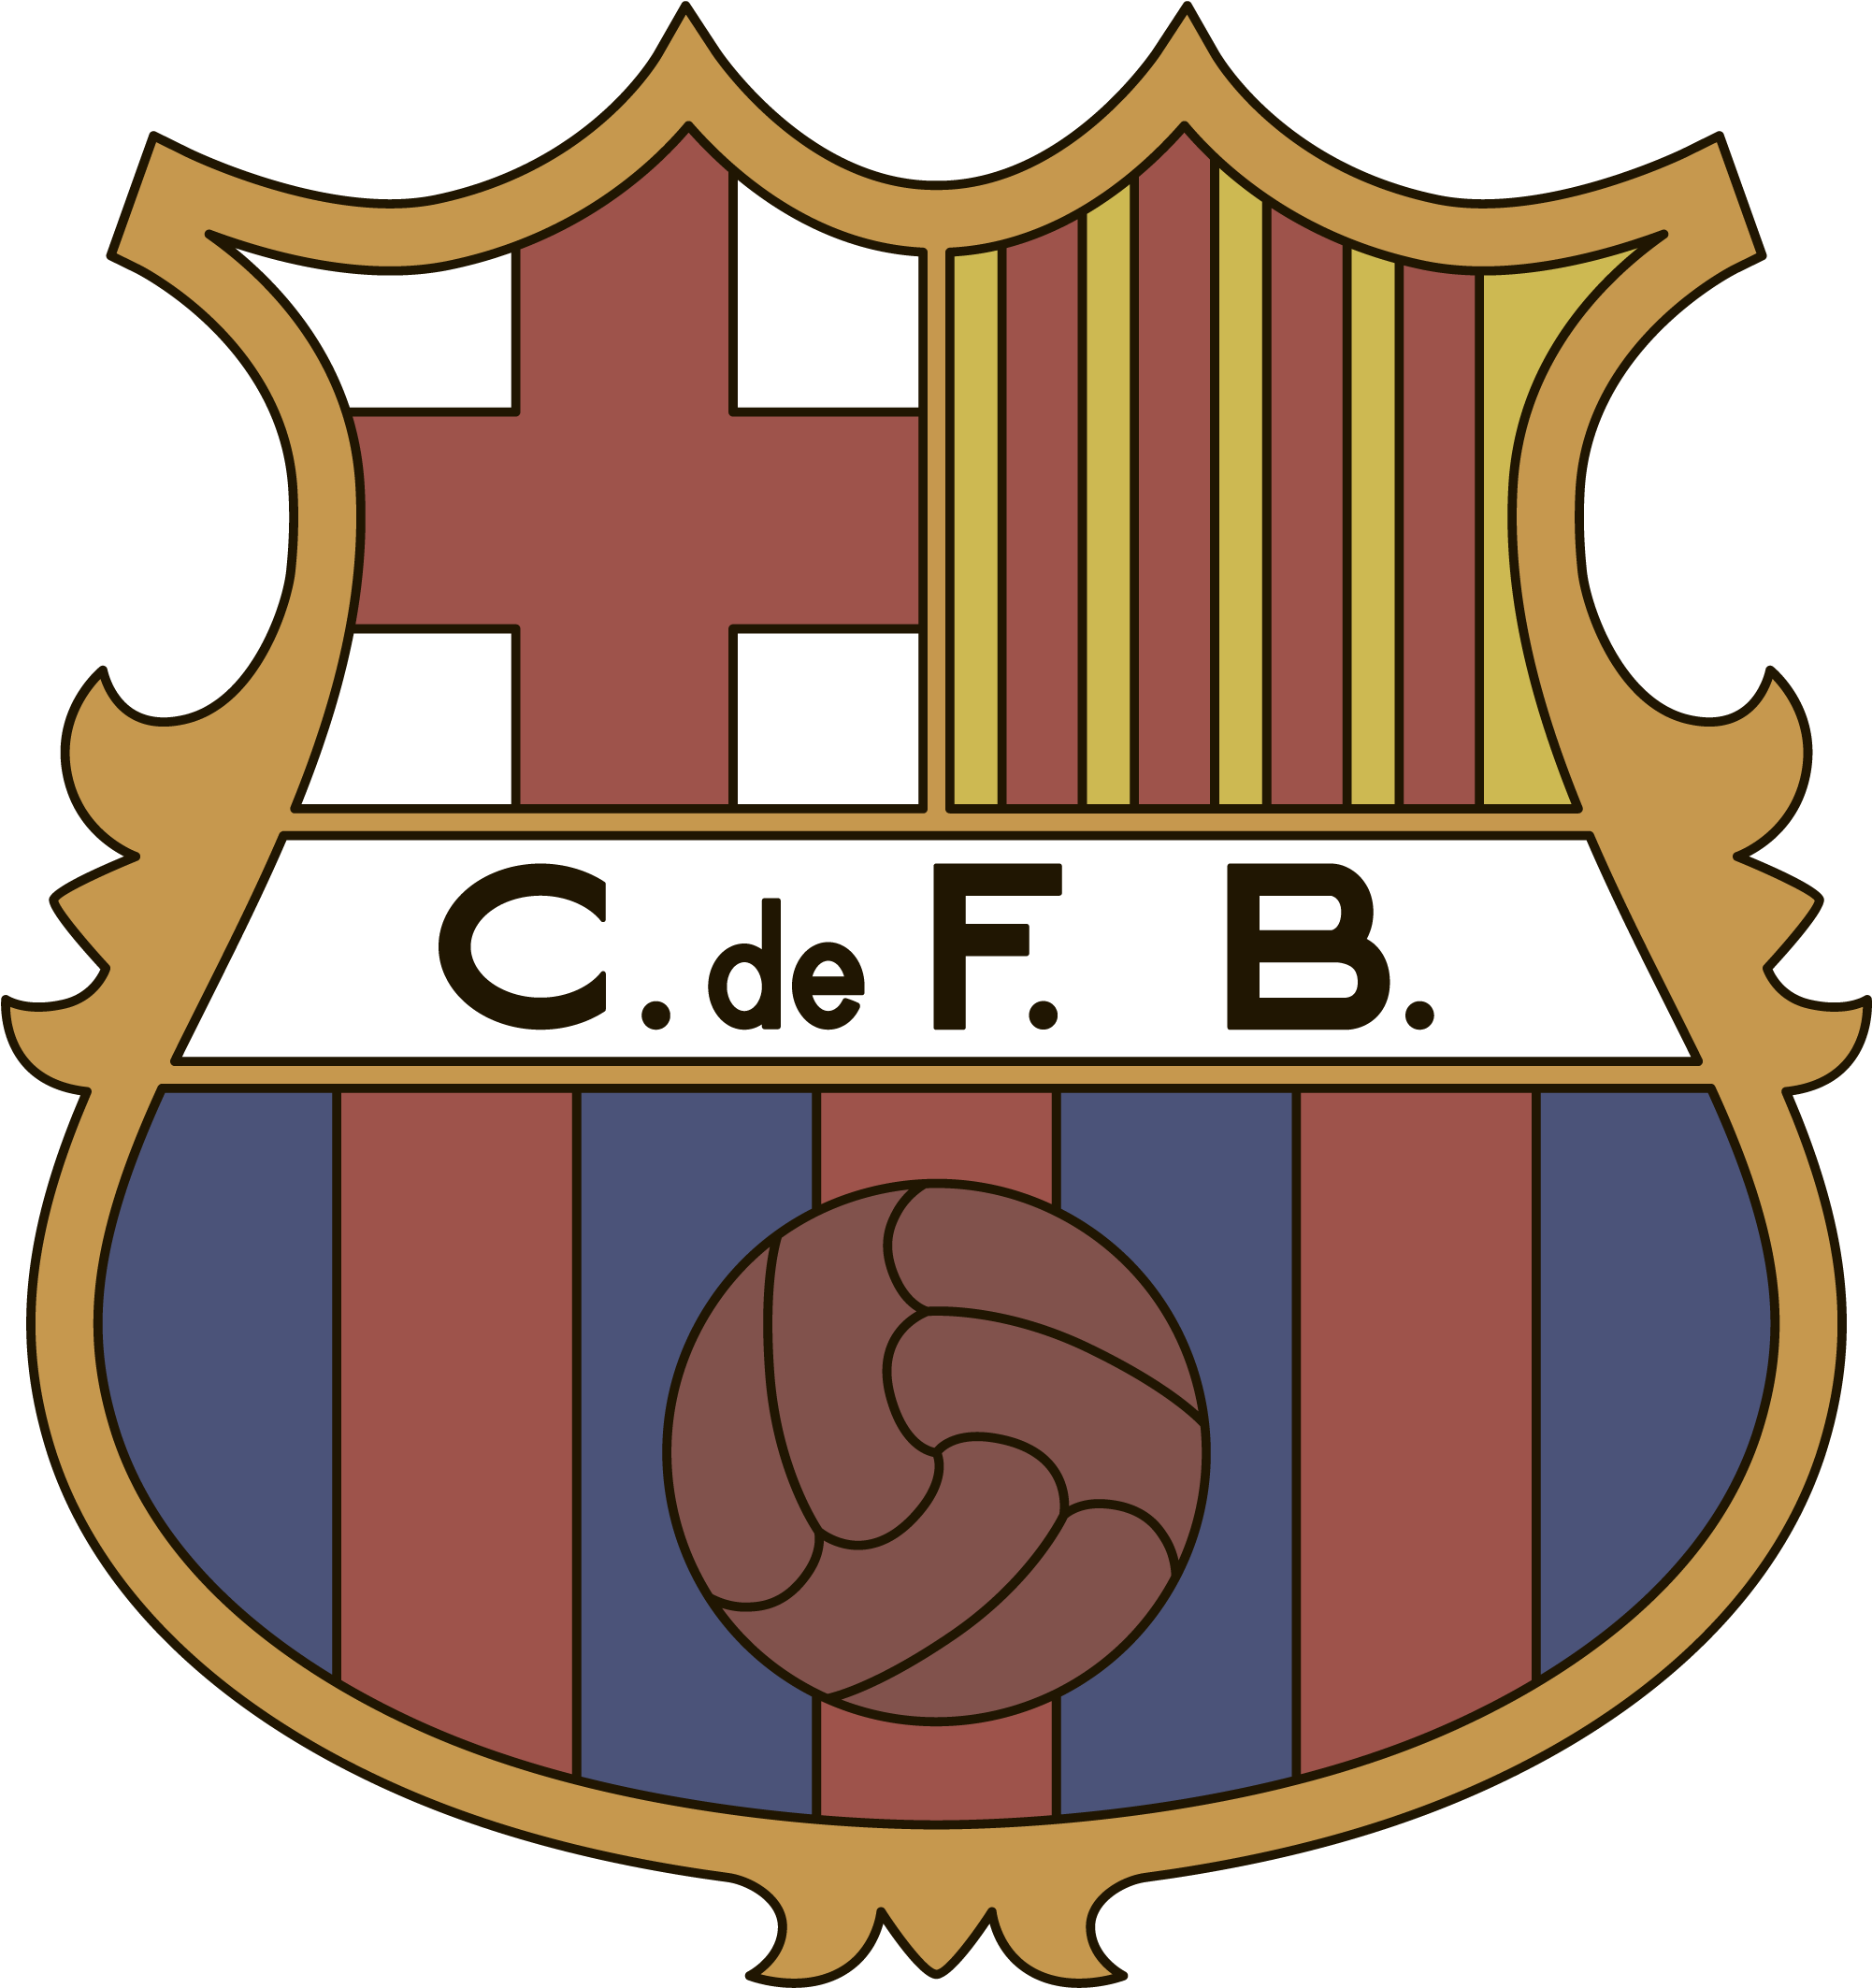 Ab c de f. Барселона футбольный клуб лого. Барселона герб футбольного клуба. Барселона футбольный клуб эмблема логотип. Барселона эмблема 2021.